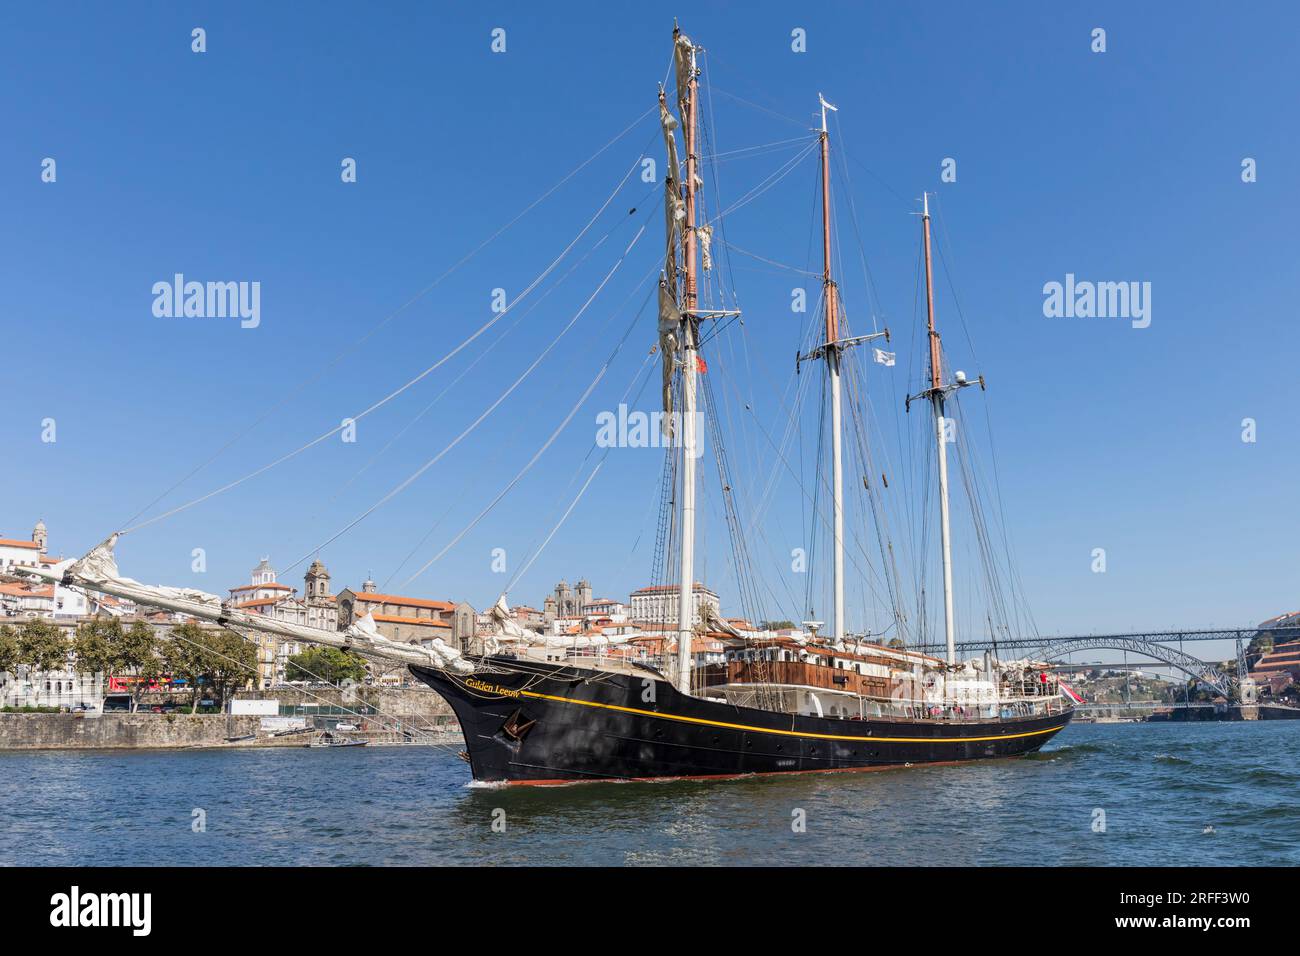 Der Gulden Leeuw oder Goldene Löwe am Douro mit der portugiesischen Stadt Porto im Hintergrund. Der Dreimasten-Topsegel-Schoner war kaputt Stockfoto